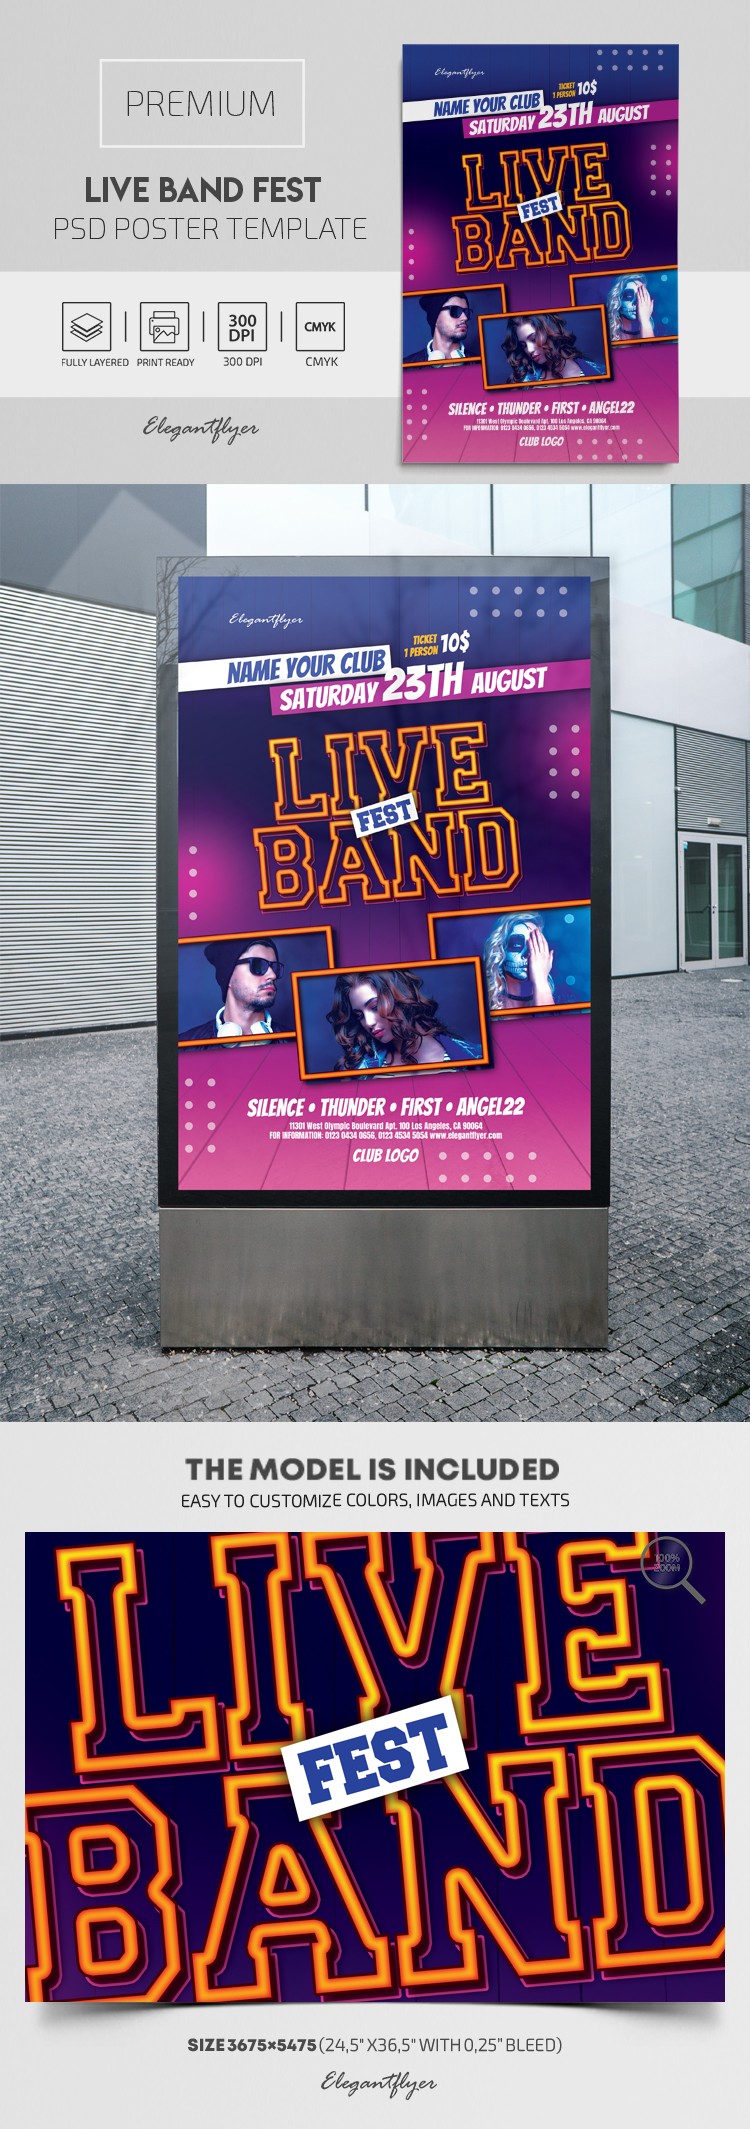 Live Band Fest Poster by ElegantFlyer